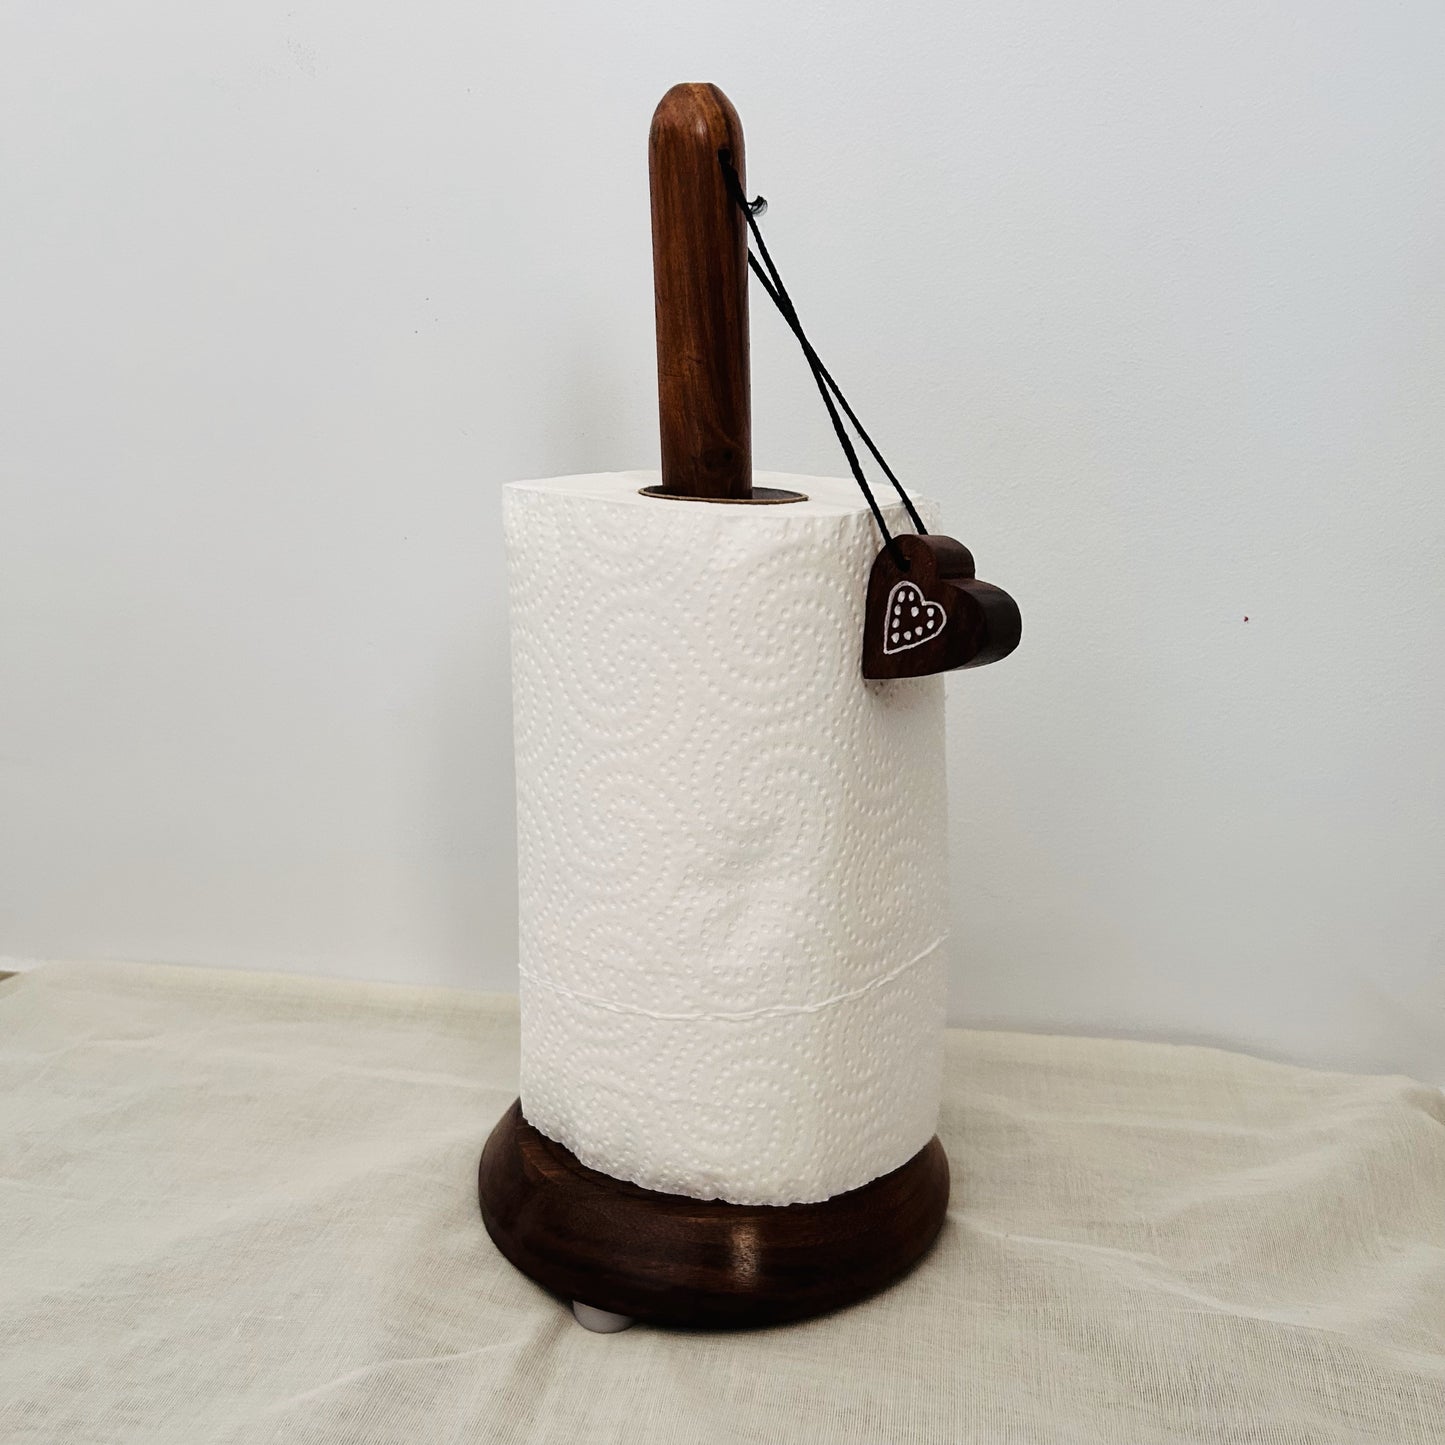 LEMONGINGER Wooden Paper Towel Holder | Kitchen Towel Holder | Paper Napkin Tissue Roll Stand